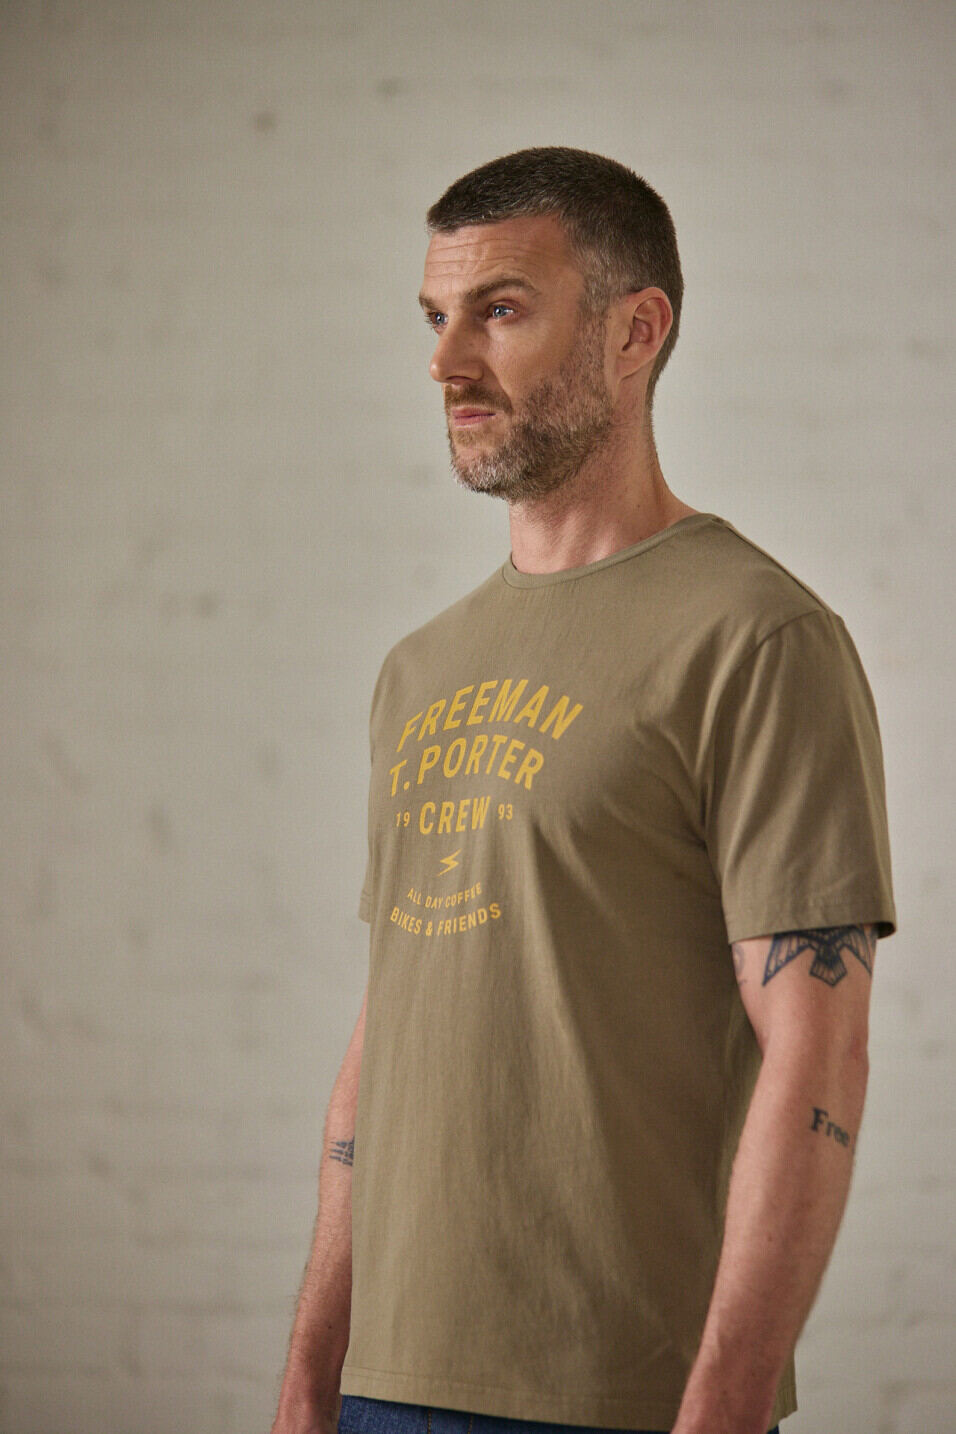 T-shirt manches courtes Homme Ivander Crew Deep lichen green | Freeman T. Porter